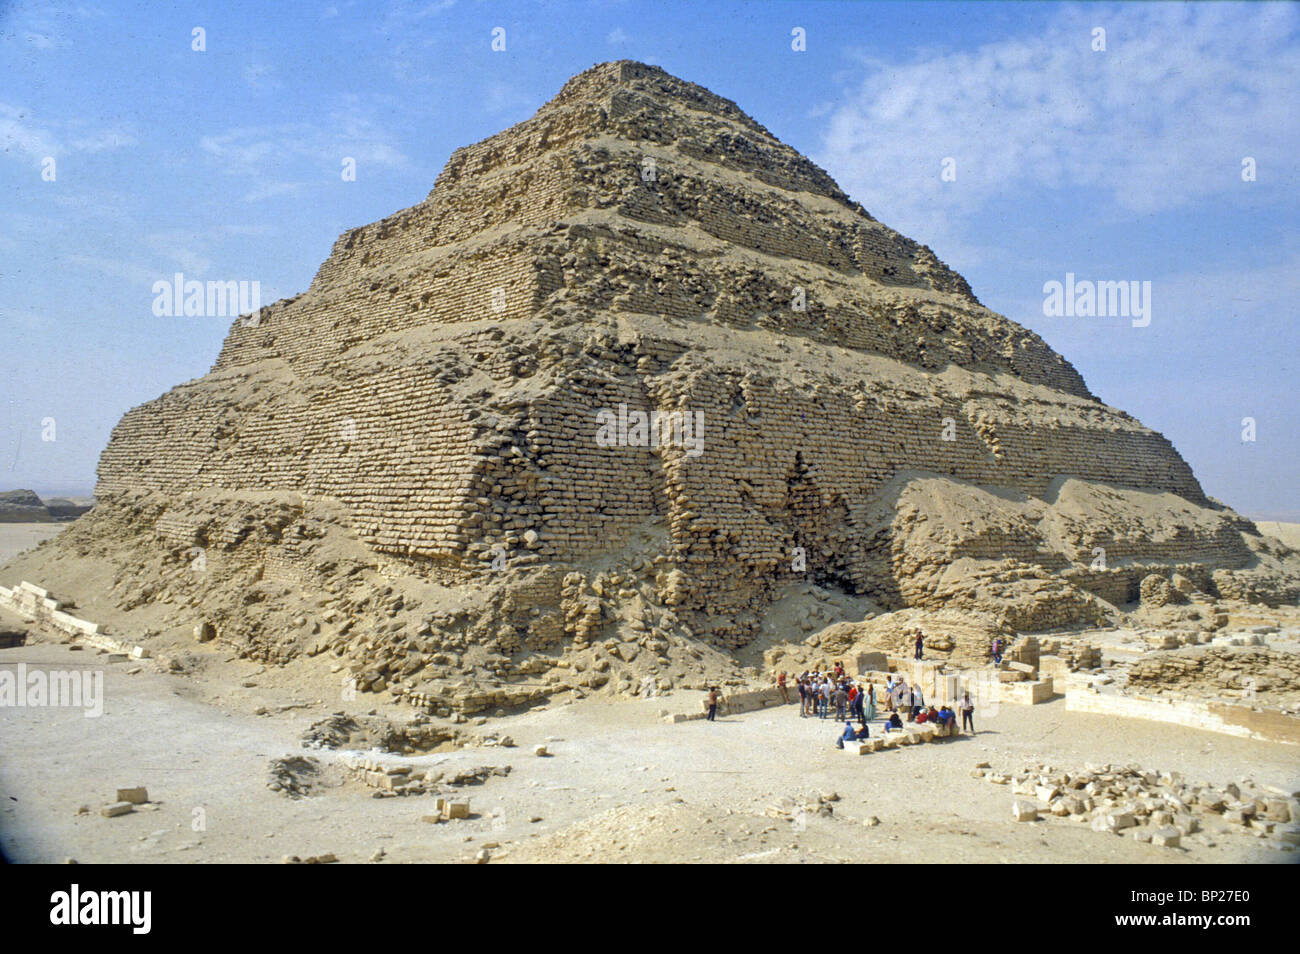 La pirámide escalonada de SAQARA TUMBA DEL REY DJOSER DE LA 3ª. DYNASTY ES LA más antigua de las pirámides que datan de los años 2686 - Foto de stock